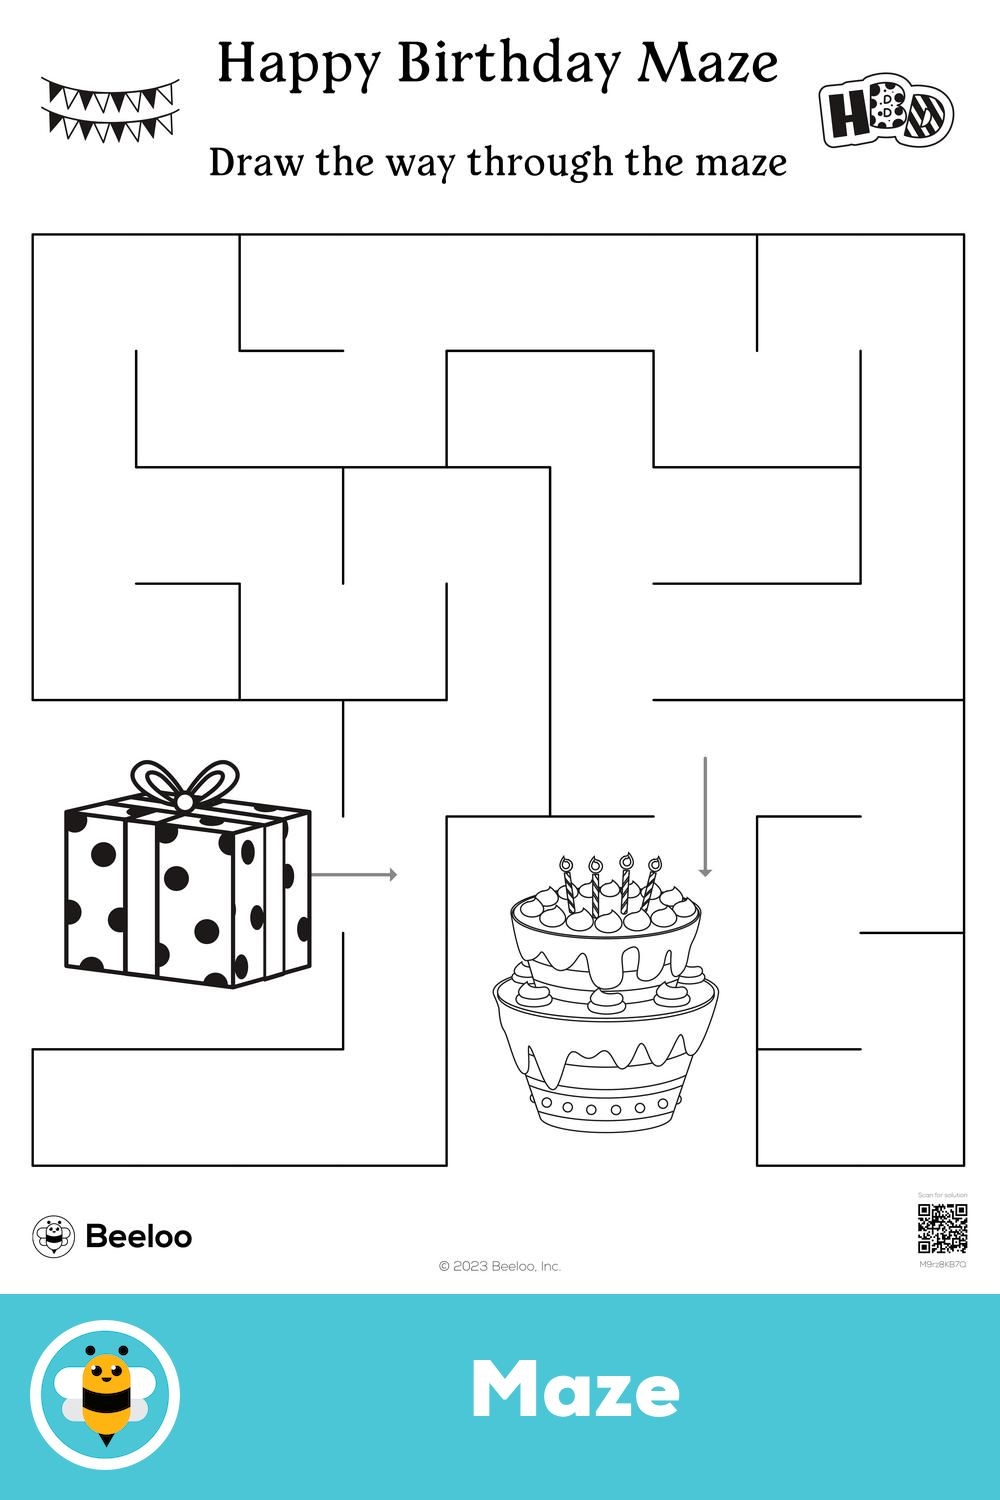 Happy Birthday Maze Mazes For Kids Happy Birthday Cards Printable Happy 6th Birthday